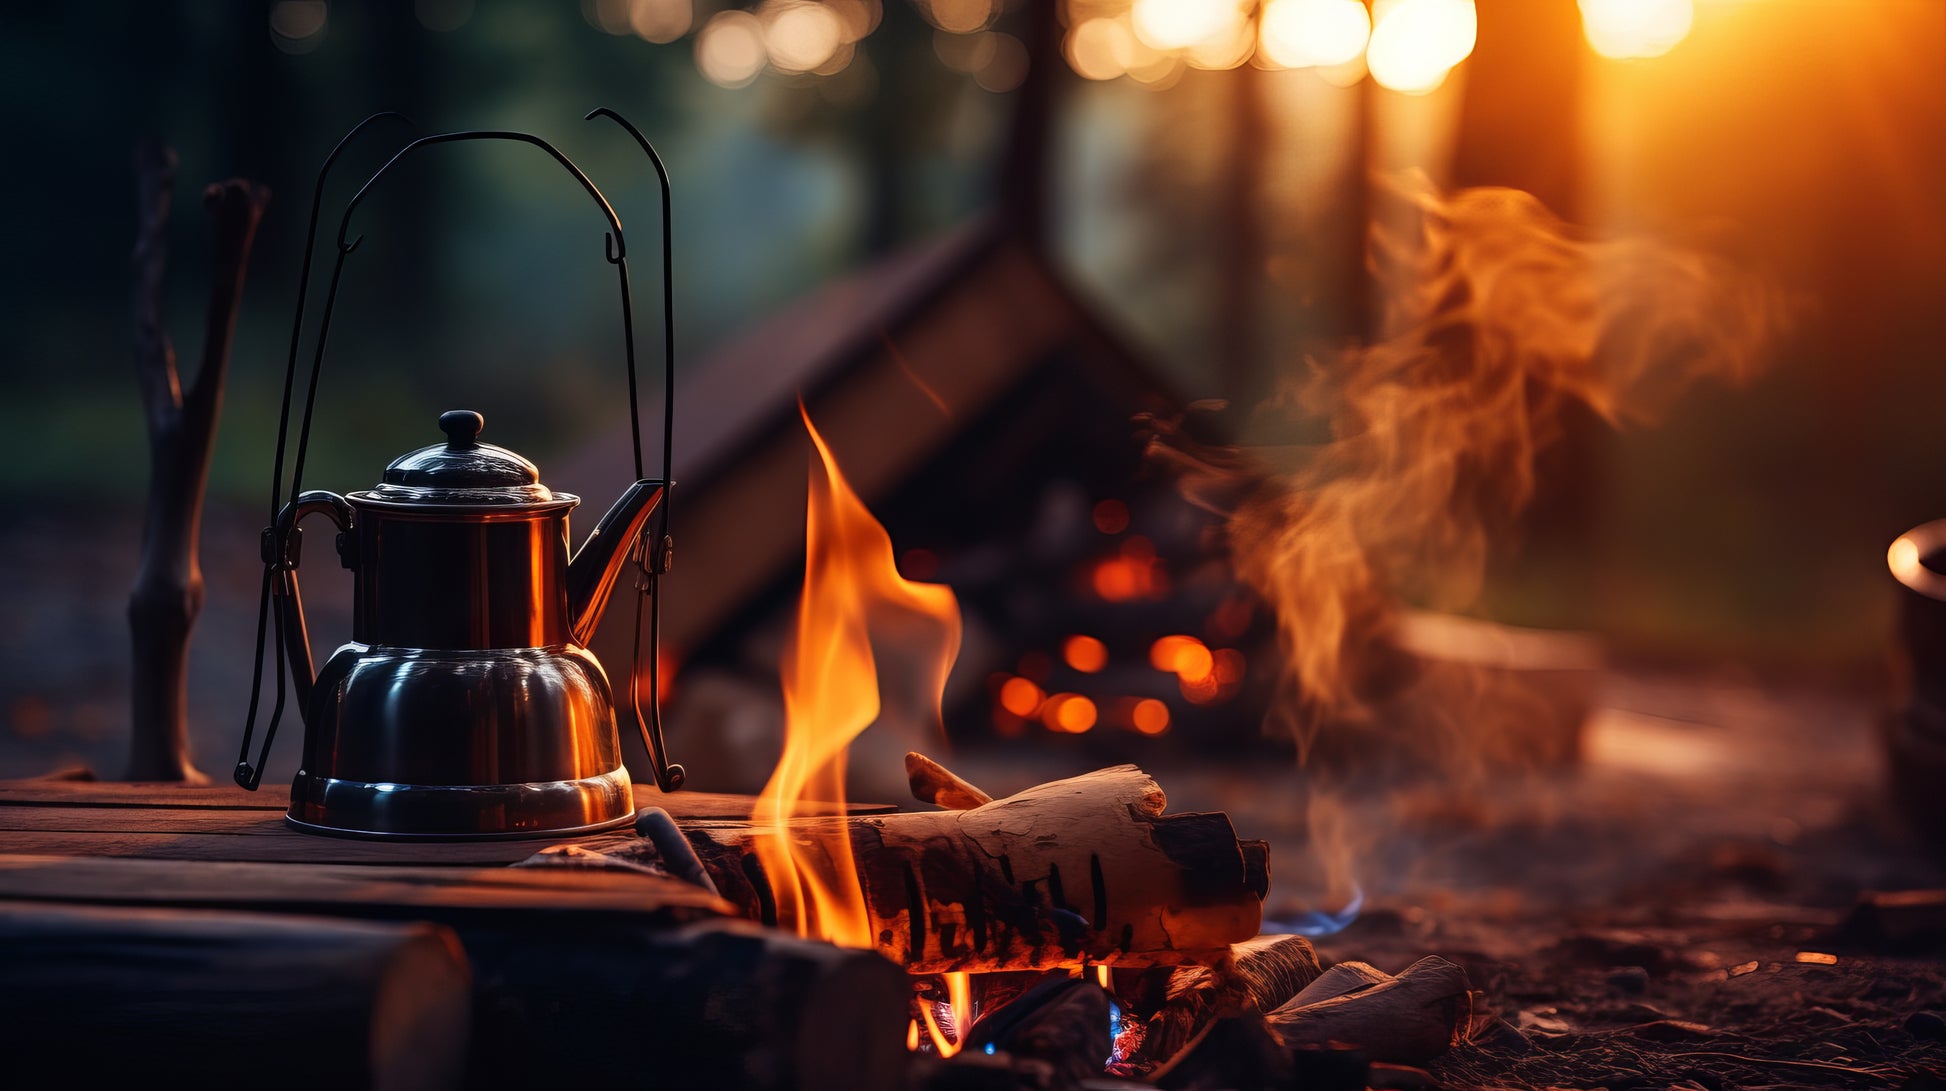 Ein metallener Kaffeekessel hängt an einem Gestell über einem lodernden Lagerfeuer im Wald. Das Feuer wirft warme, orangefarbene Lichtreflexe auf den Kessel und erzeugt eine gemütliche Atmosphäre. Im Hintergrund ist ein weiterer, leicht verschwommener Feuerplatz zu sehen, umgeben von Bäumen, die in der Abenddämmerung leuchten. Die Szene vermittelt ein Gefühl von Ruhe und Entspannung in der Natur beim Kaffeekochen im Freien.